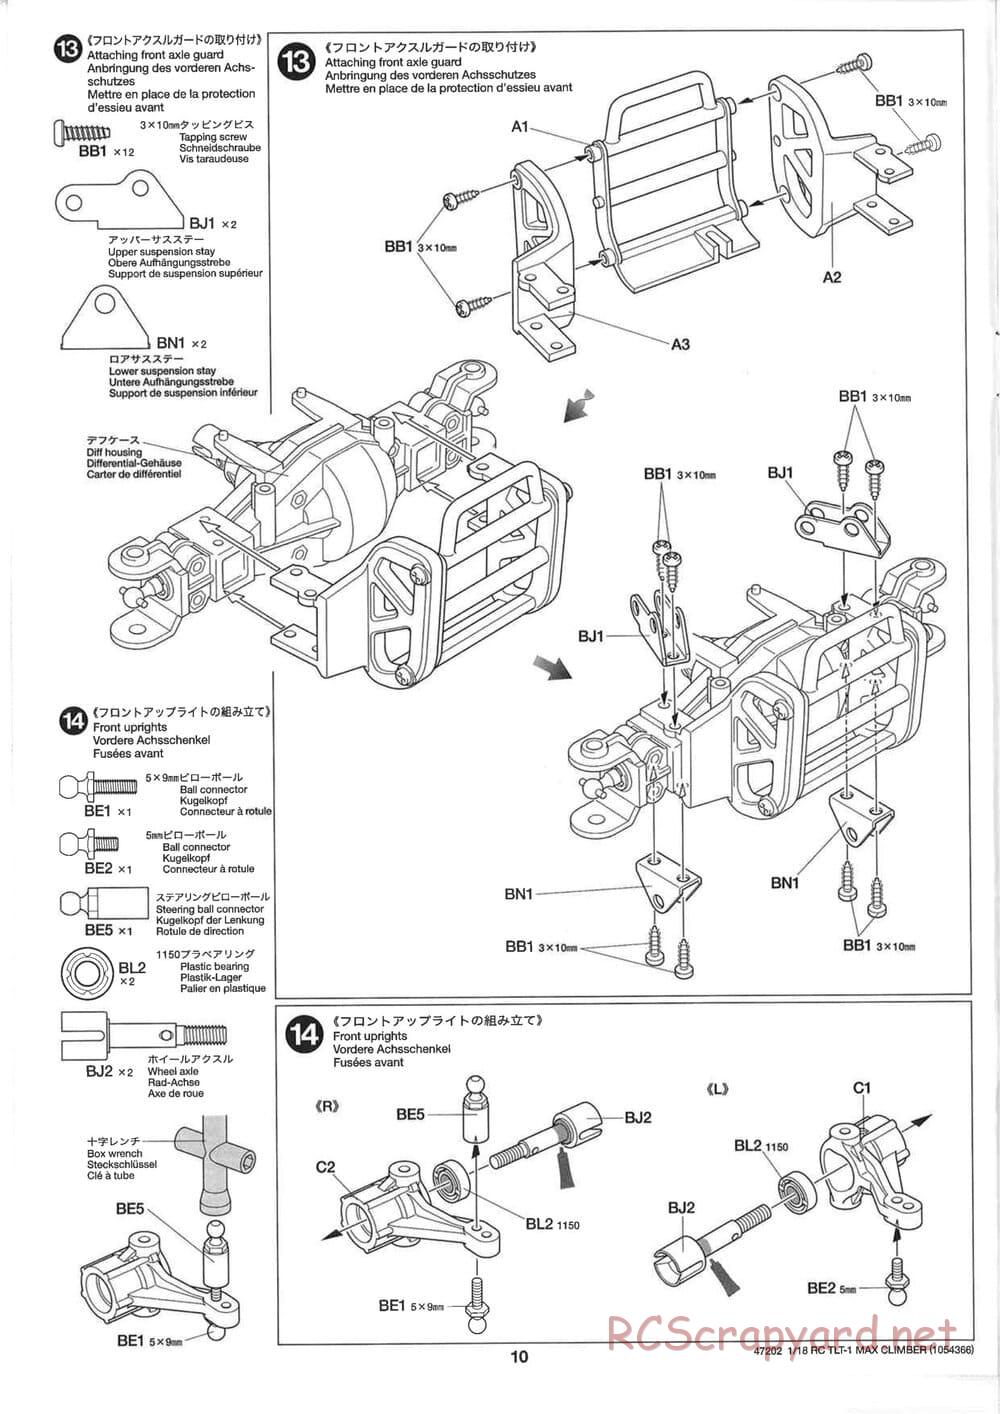 Tamiya - Max Climber - TLT-1 Chassis - Manual - Page 10